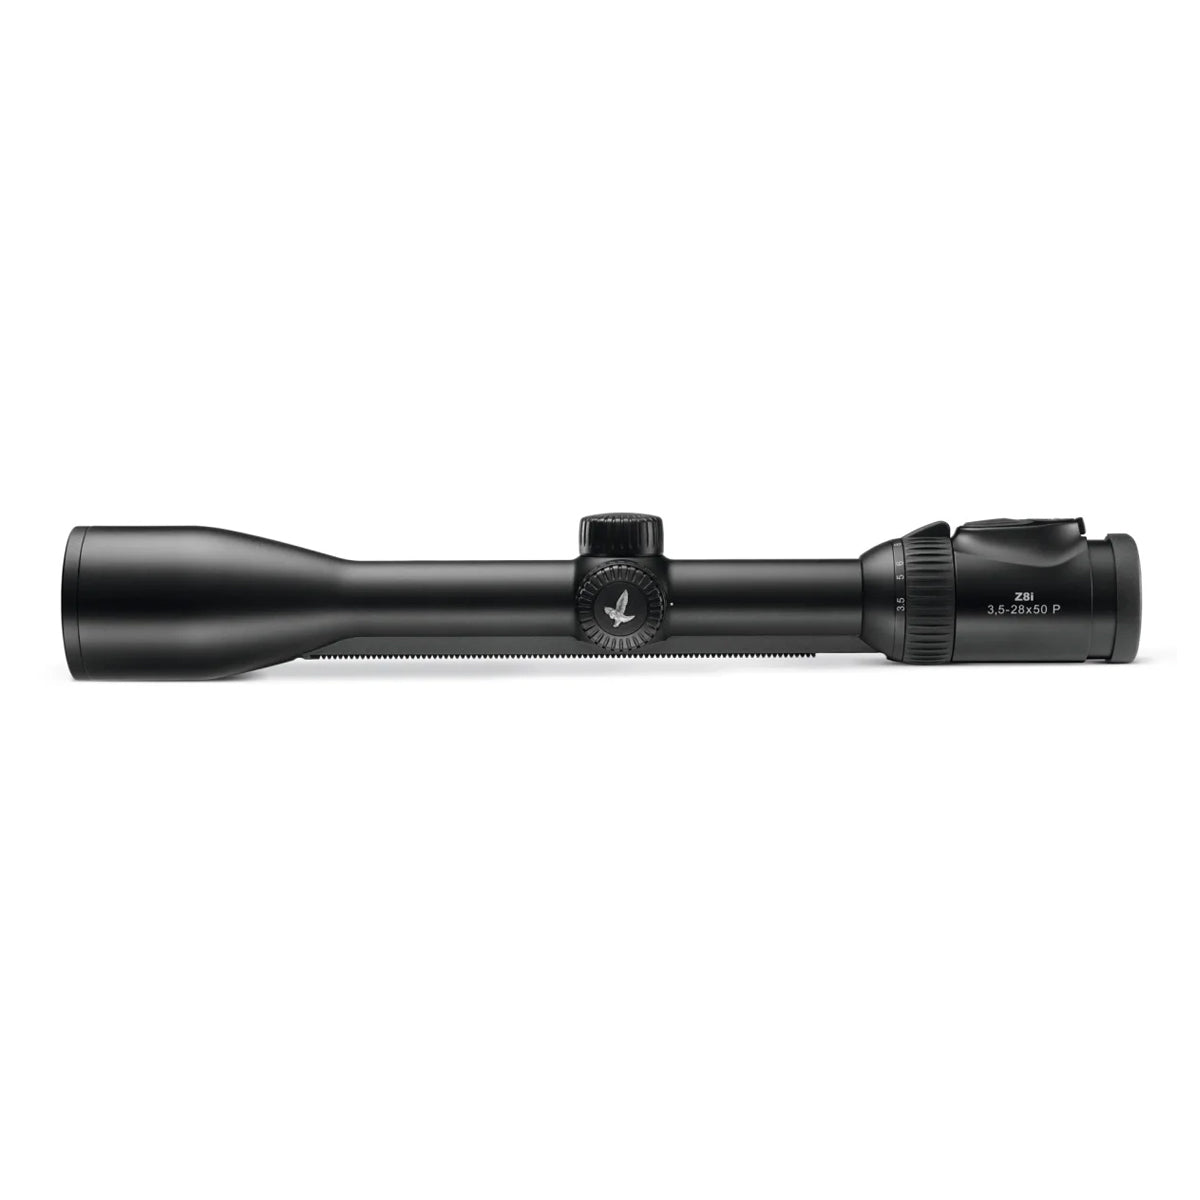 Swarovski Z8i 3.5-28x50 4W-I Riflescope in  by GOHUNT | Swarovski Optik - GOHUNT Shop